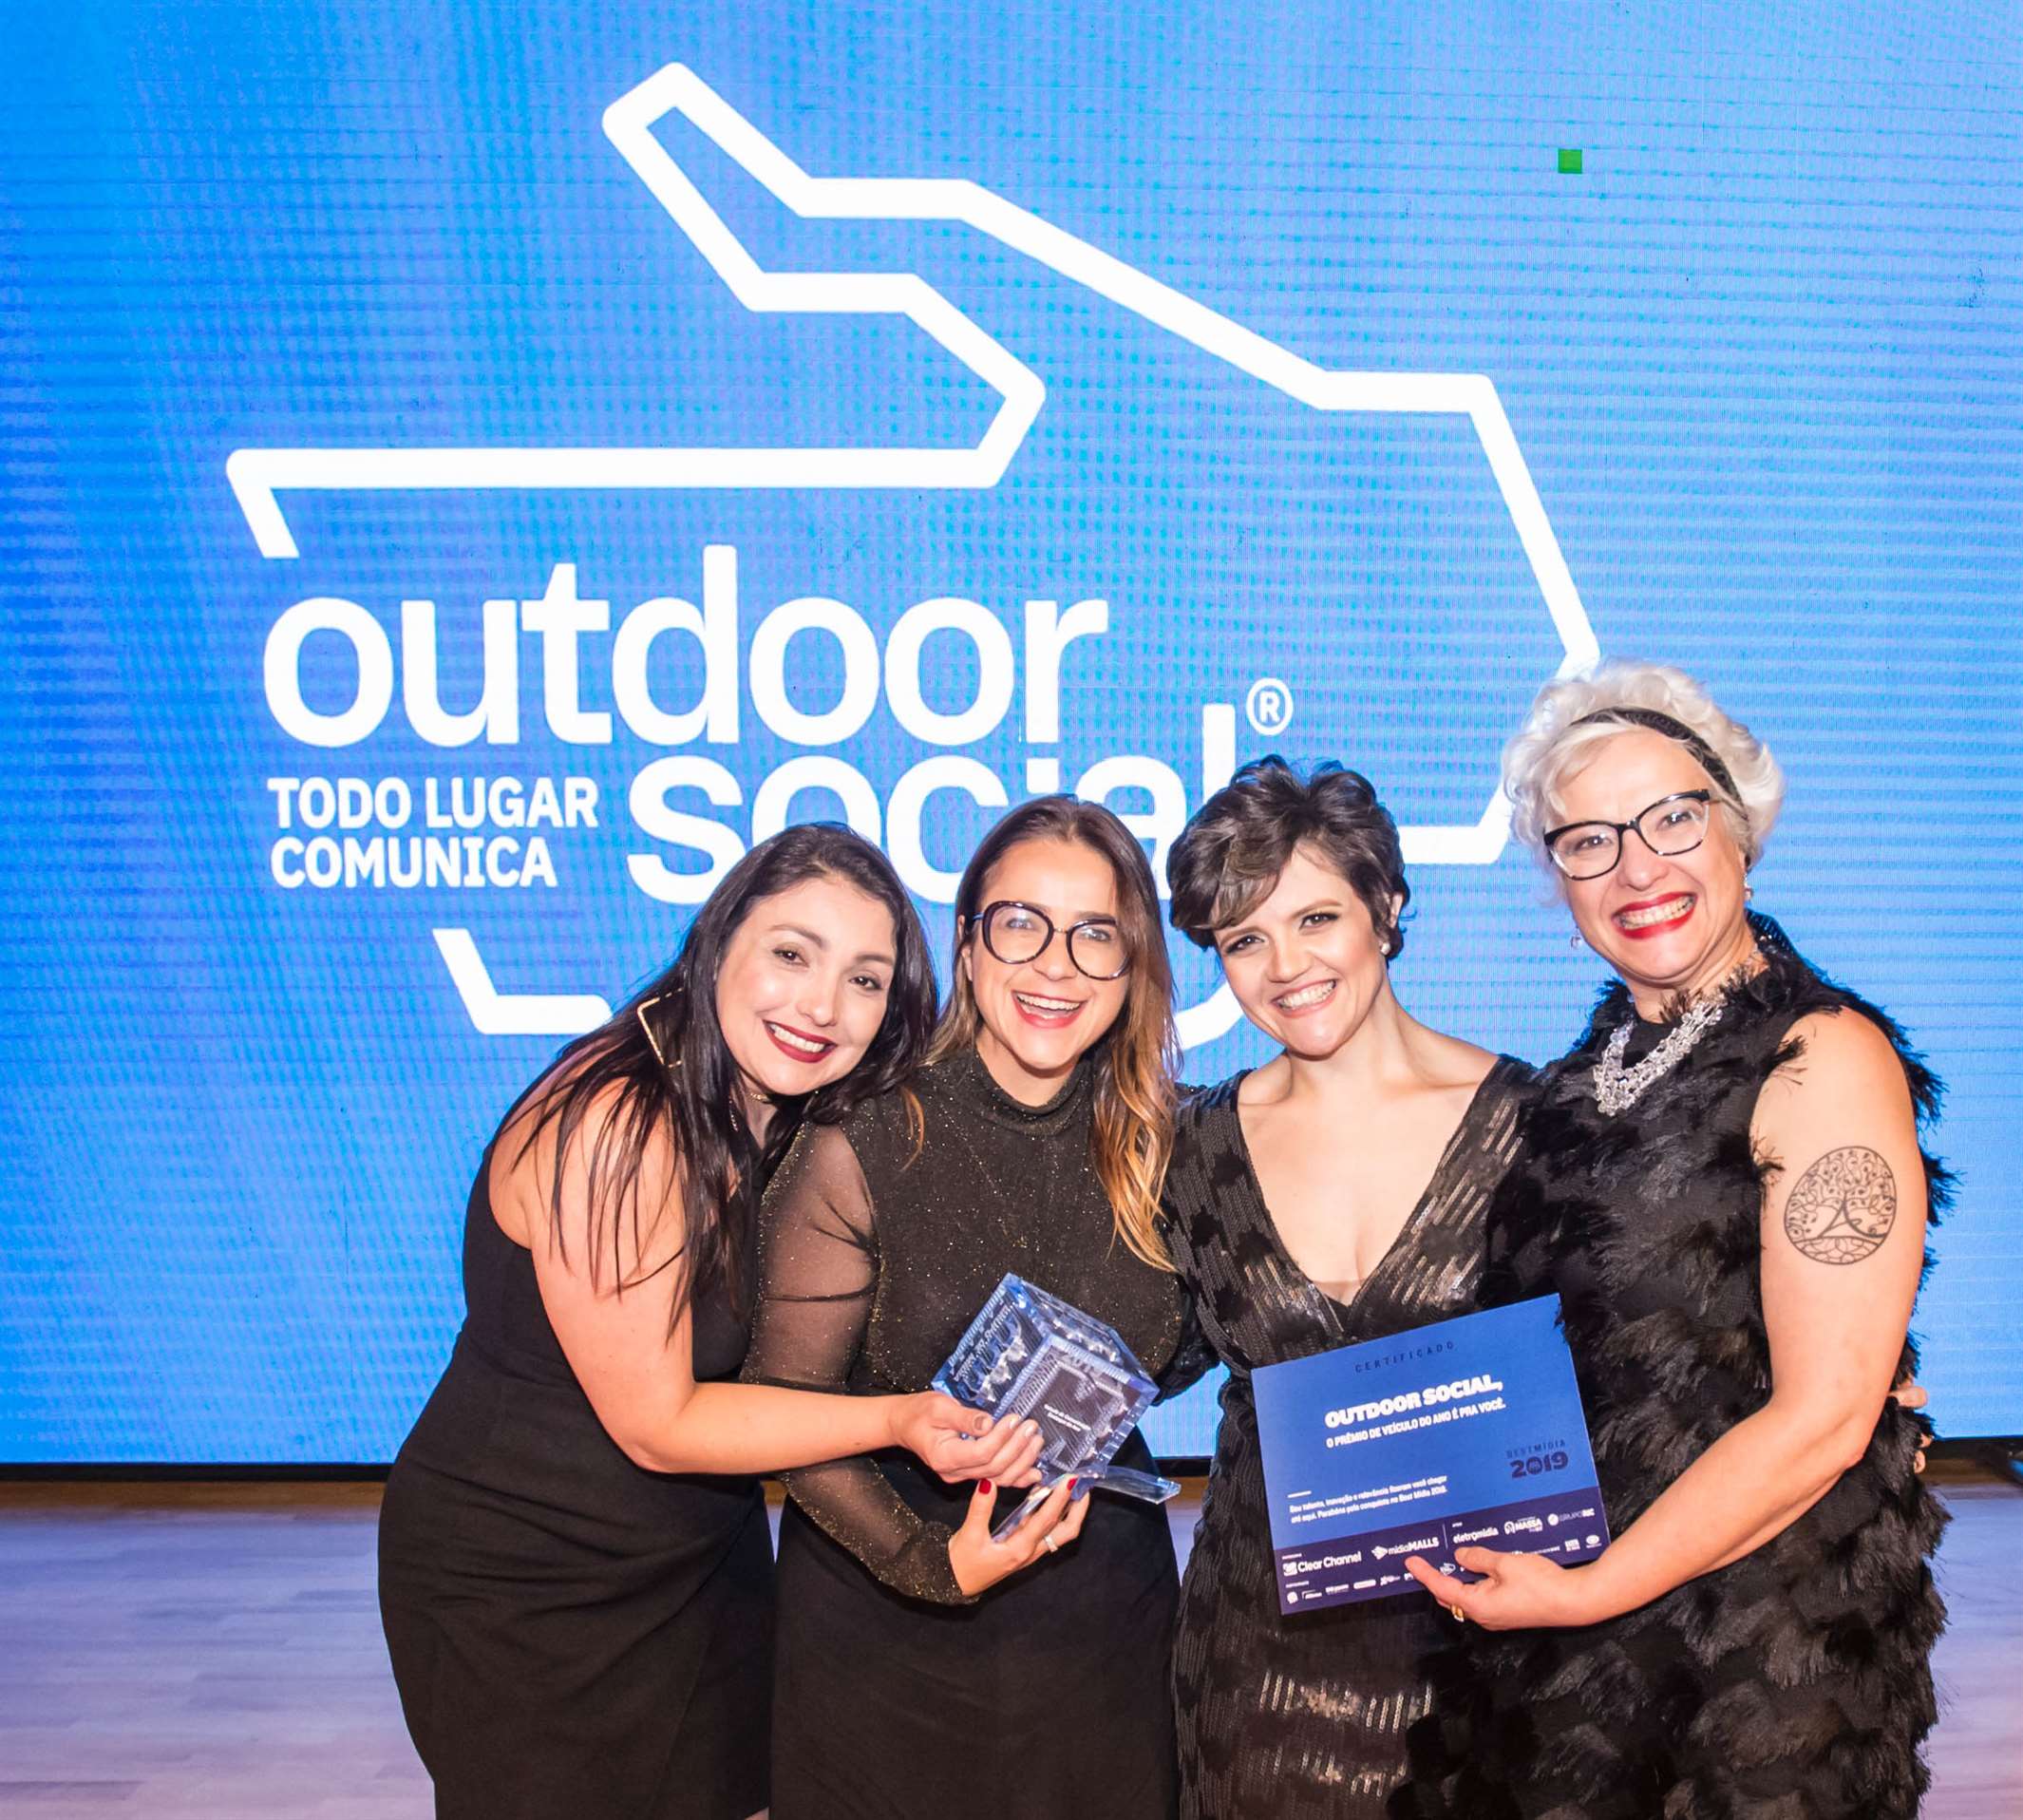 Outdoor Social ganha prêmio de “Veículo do Ano”no Best Mídia 2019